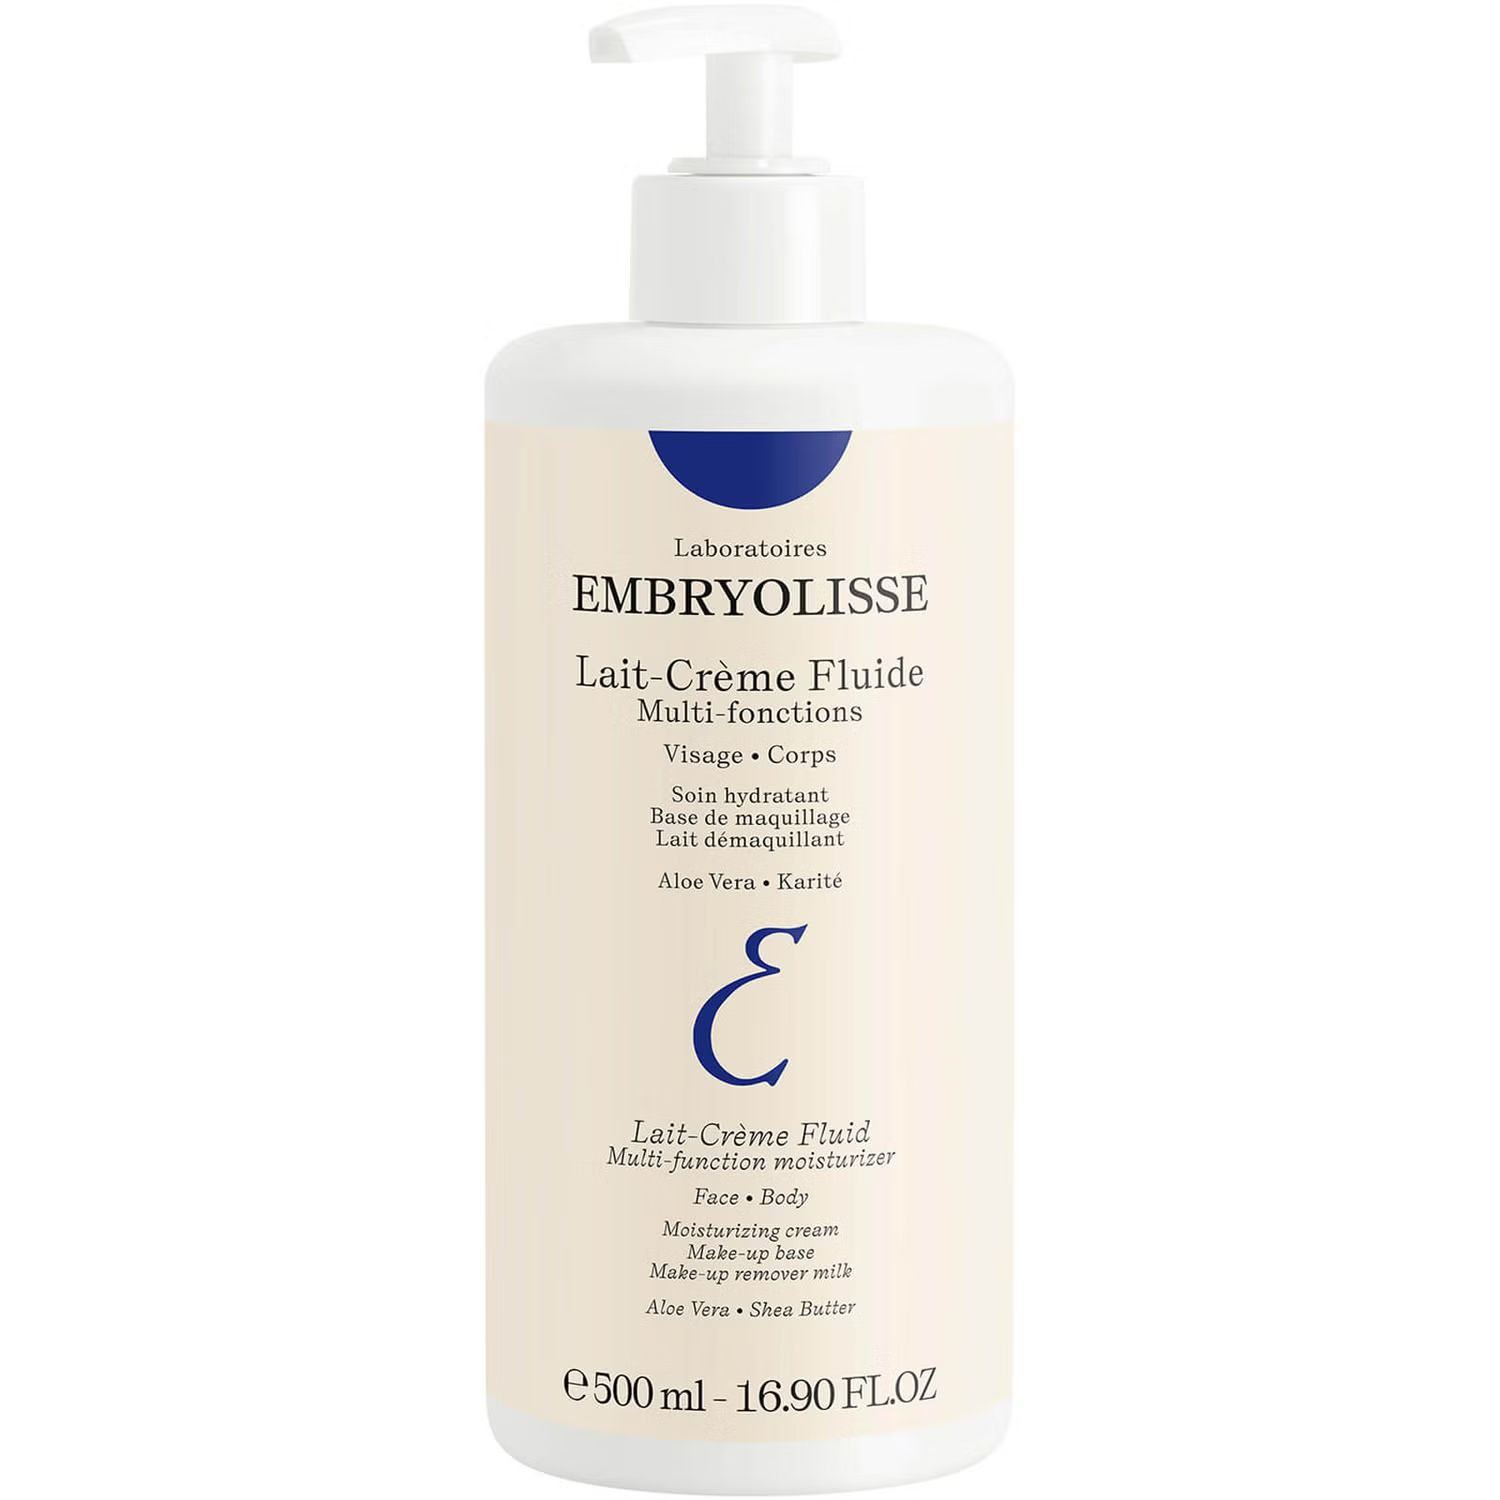 Embryolisse Lait-Crème Fluid (500ml) | Look Fantastic (UK)